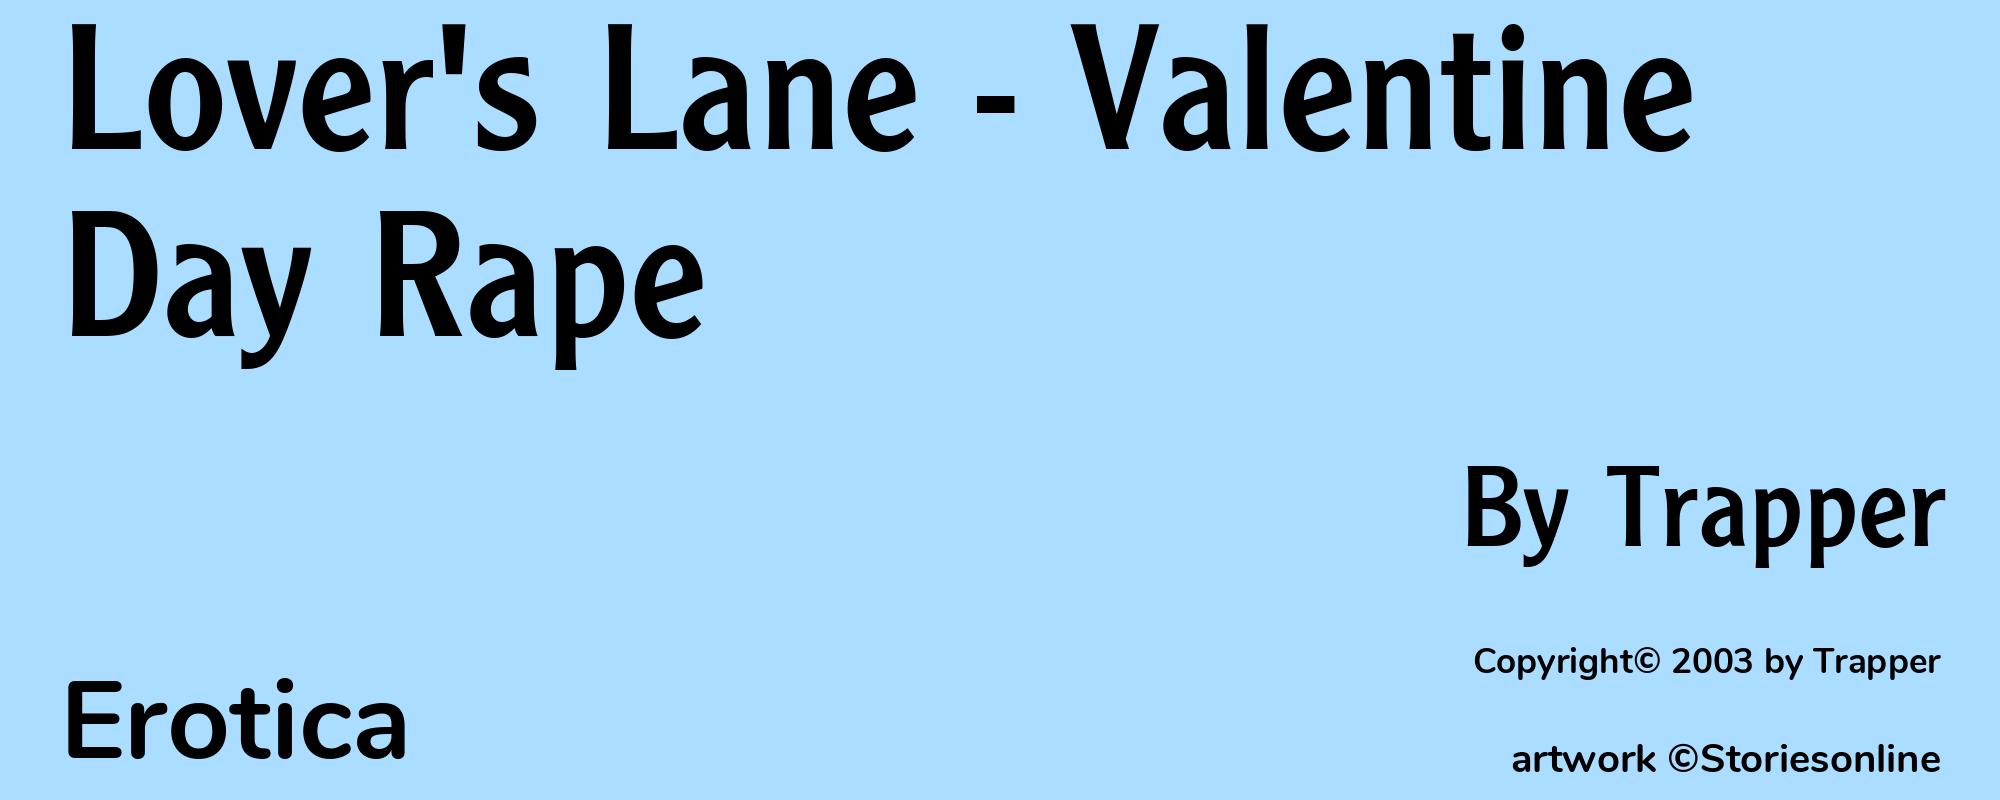 Lover's Lane - Valentine Day Rape - Cover